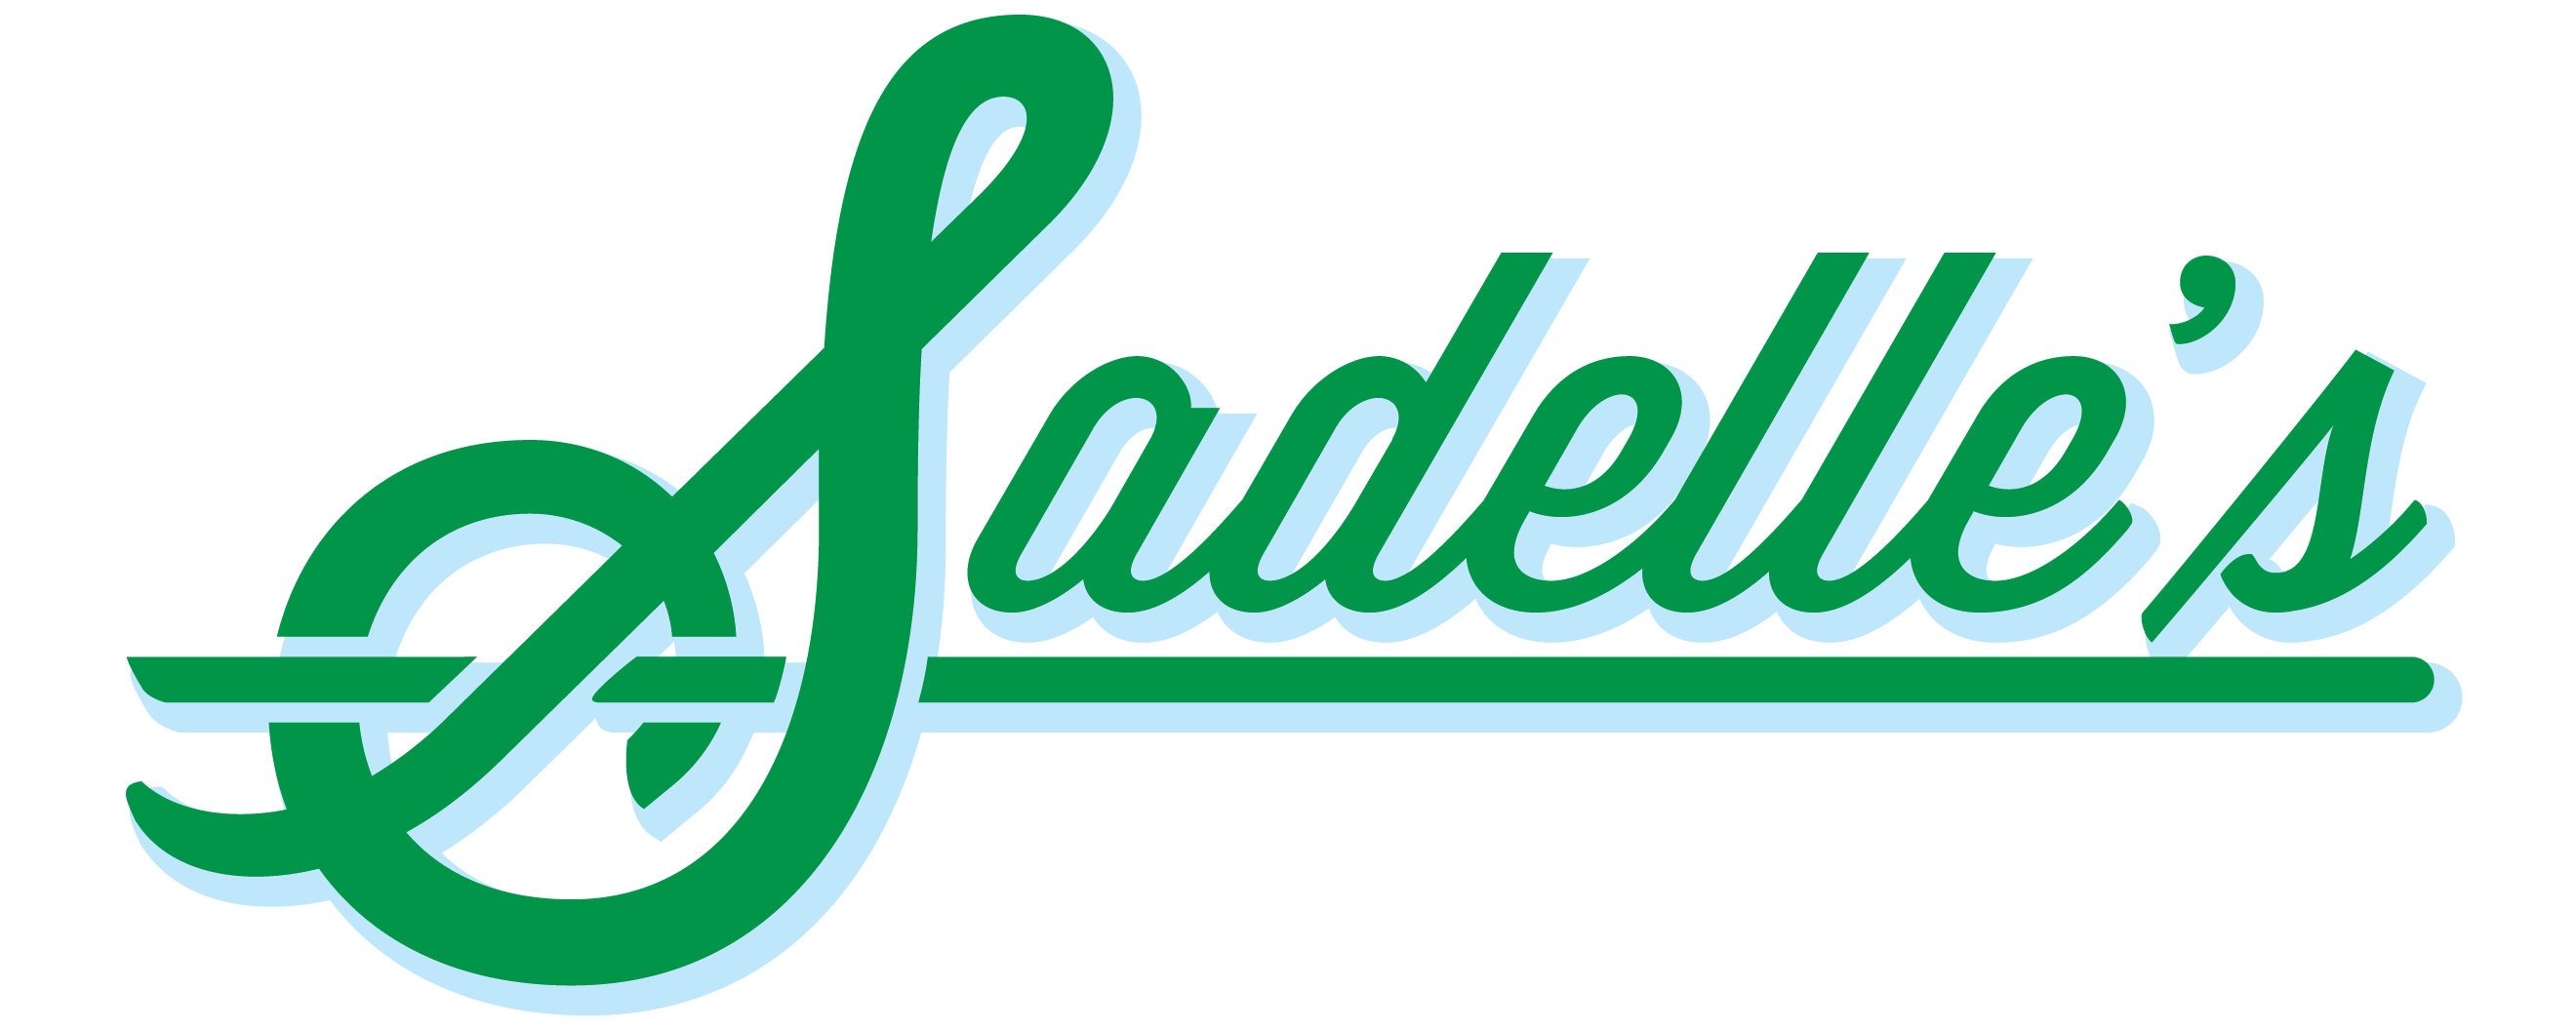 Sadelle's